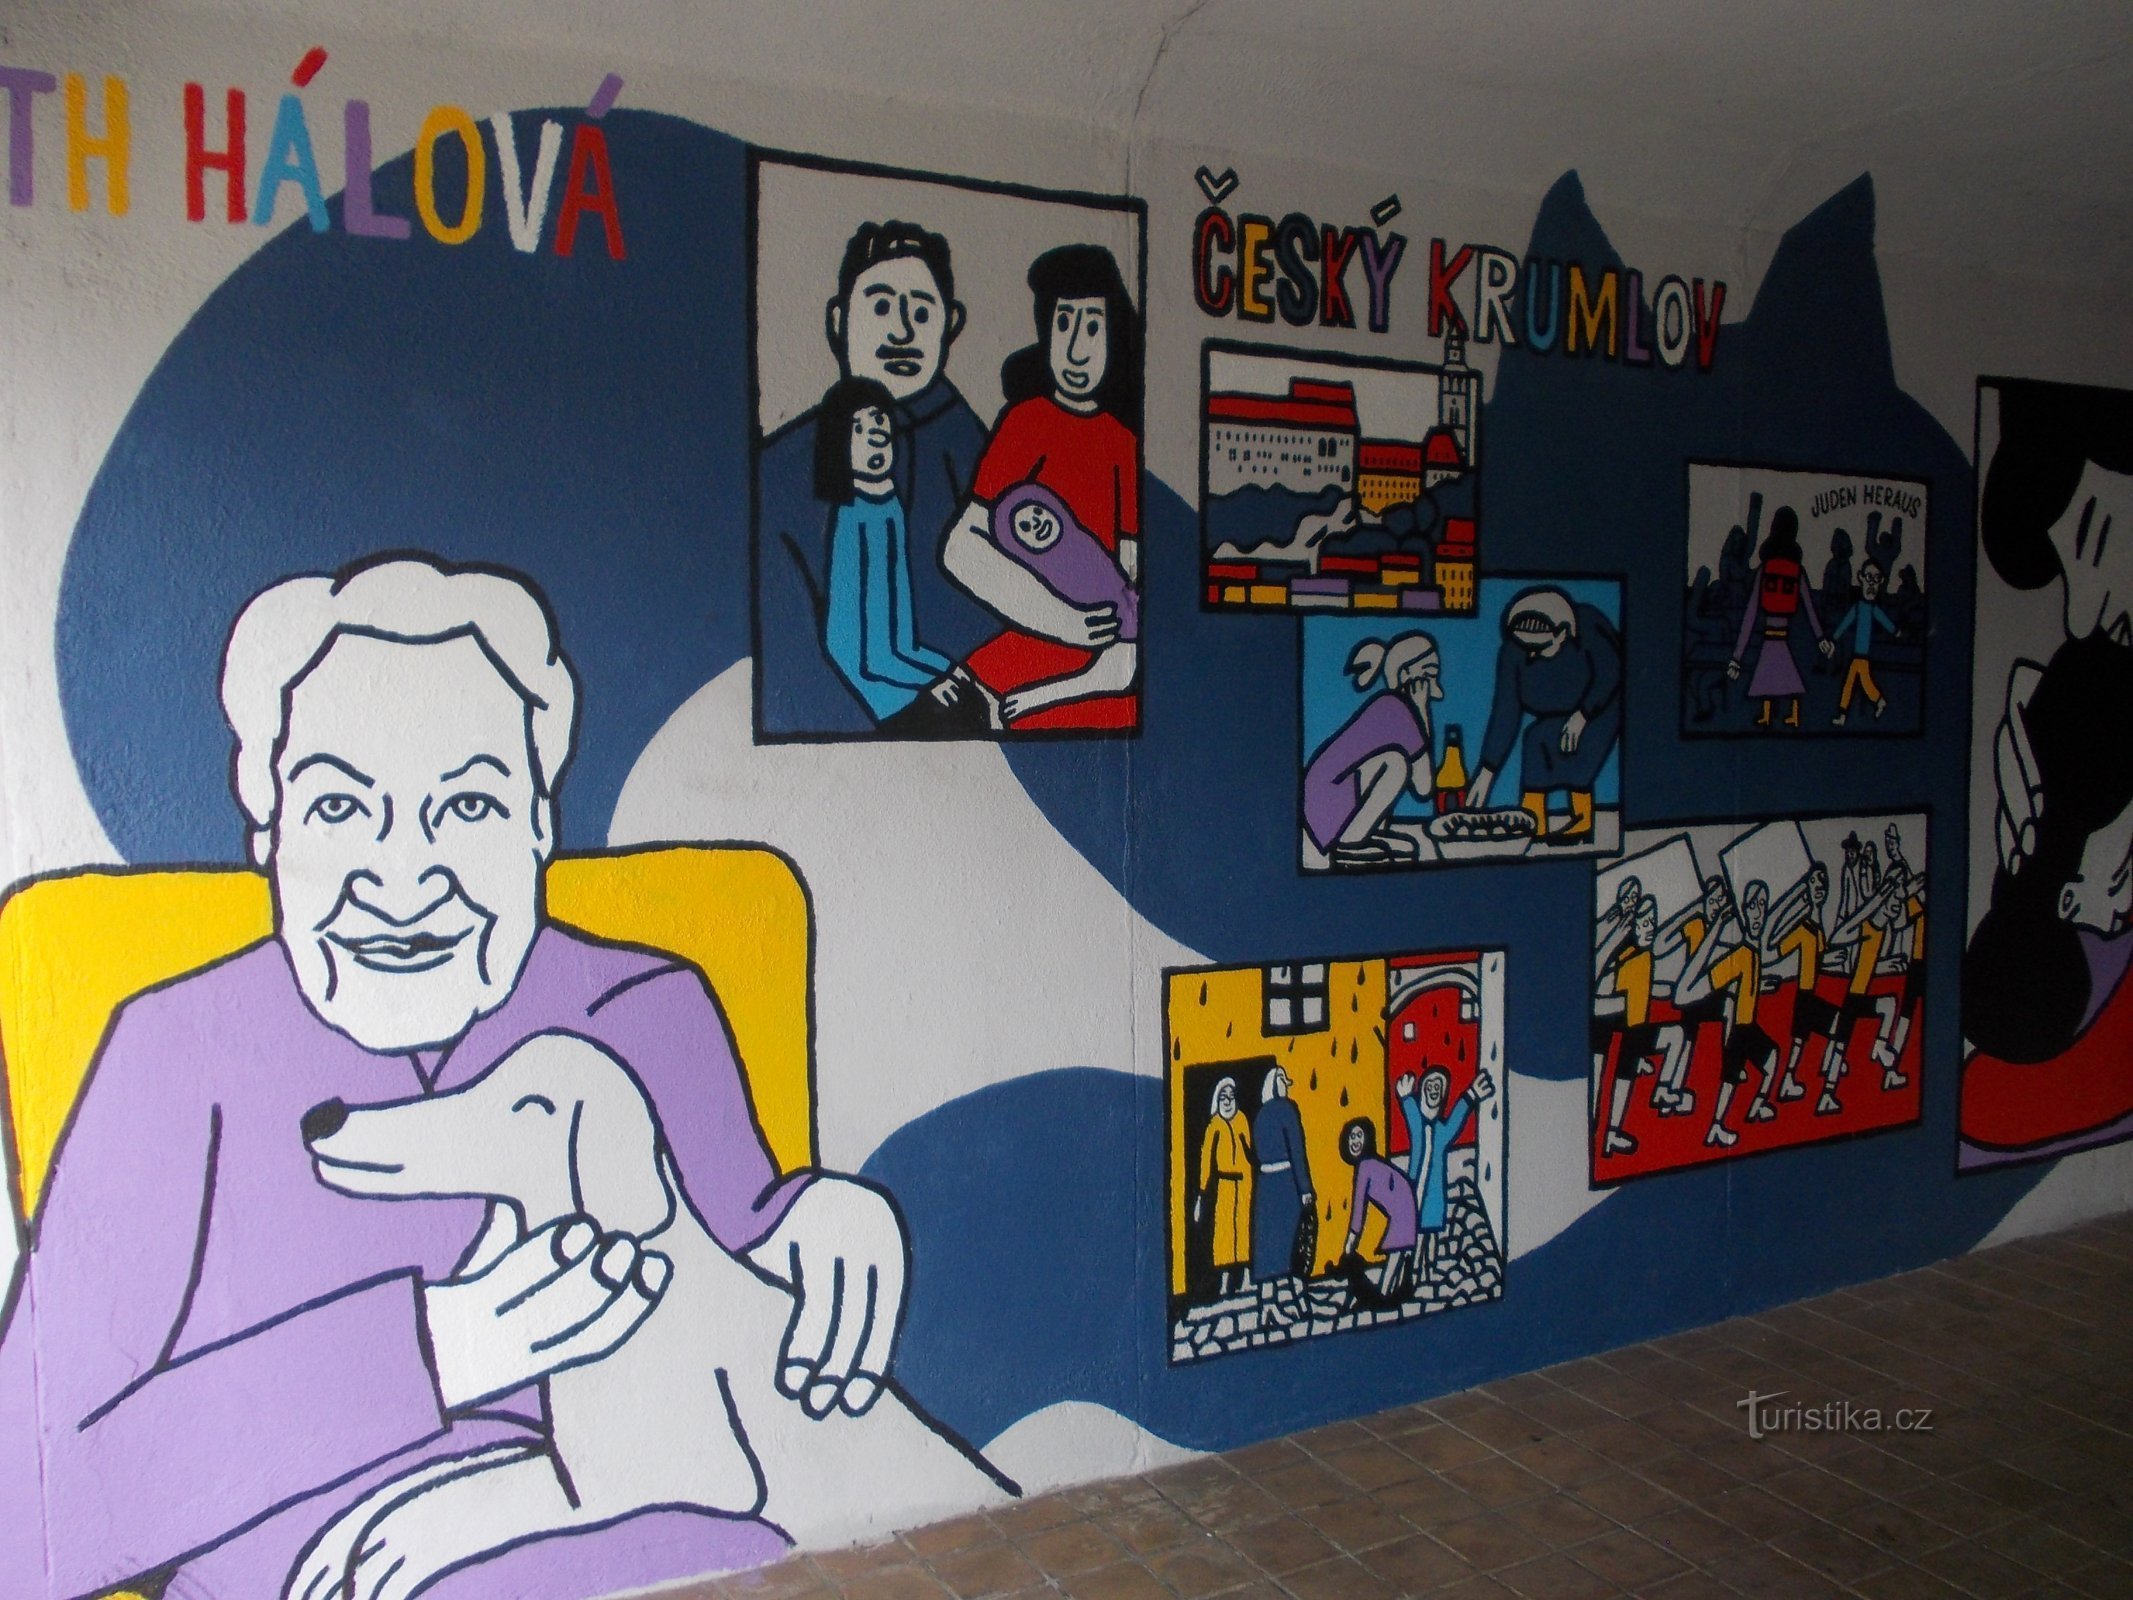 Ruth Hálová a jej životopis v obrazoch v podchode